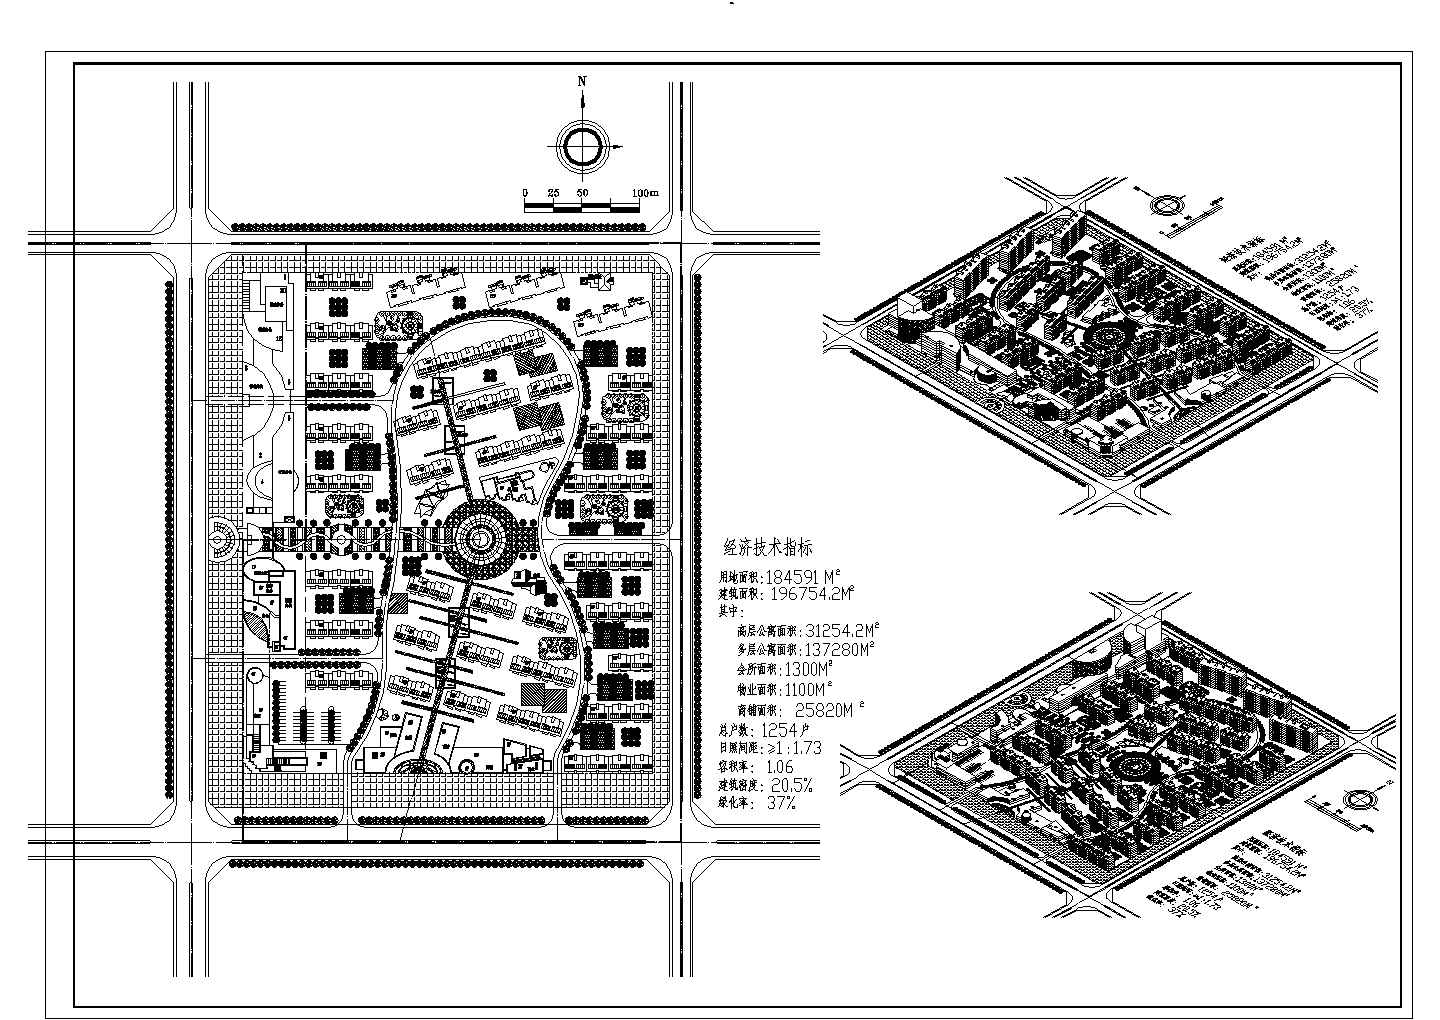 用地184591平米豪华小区规划总图